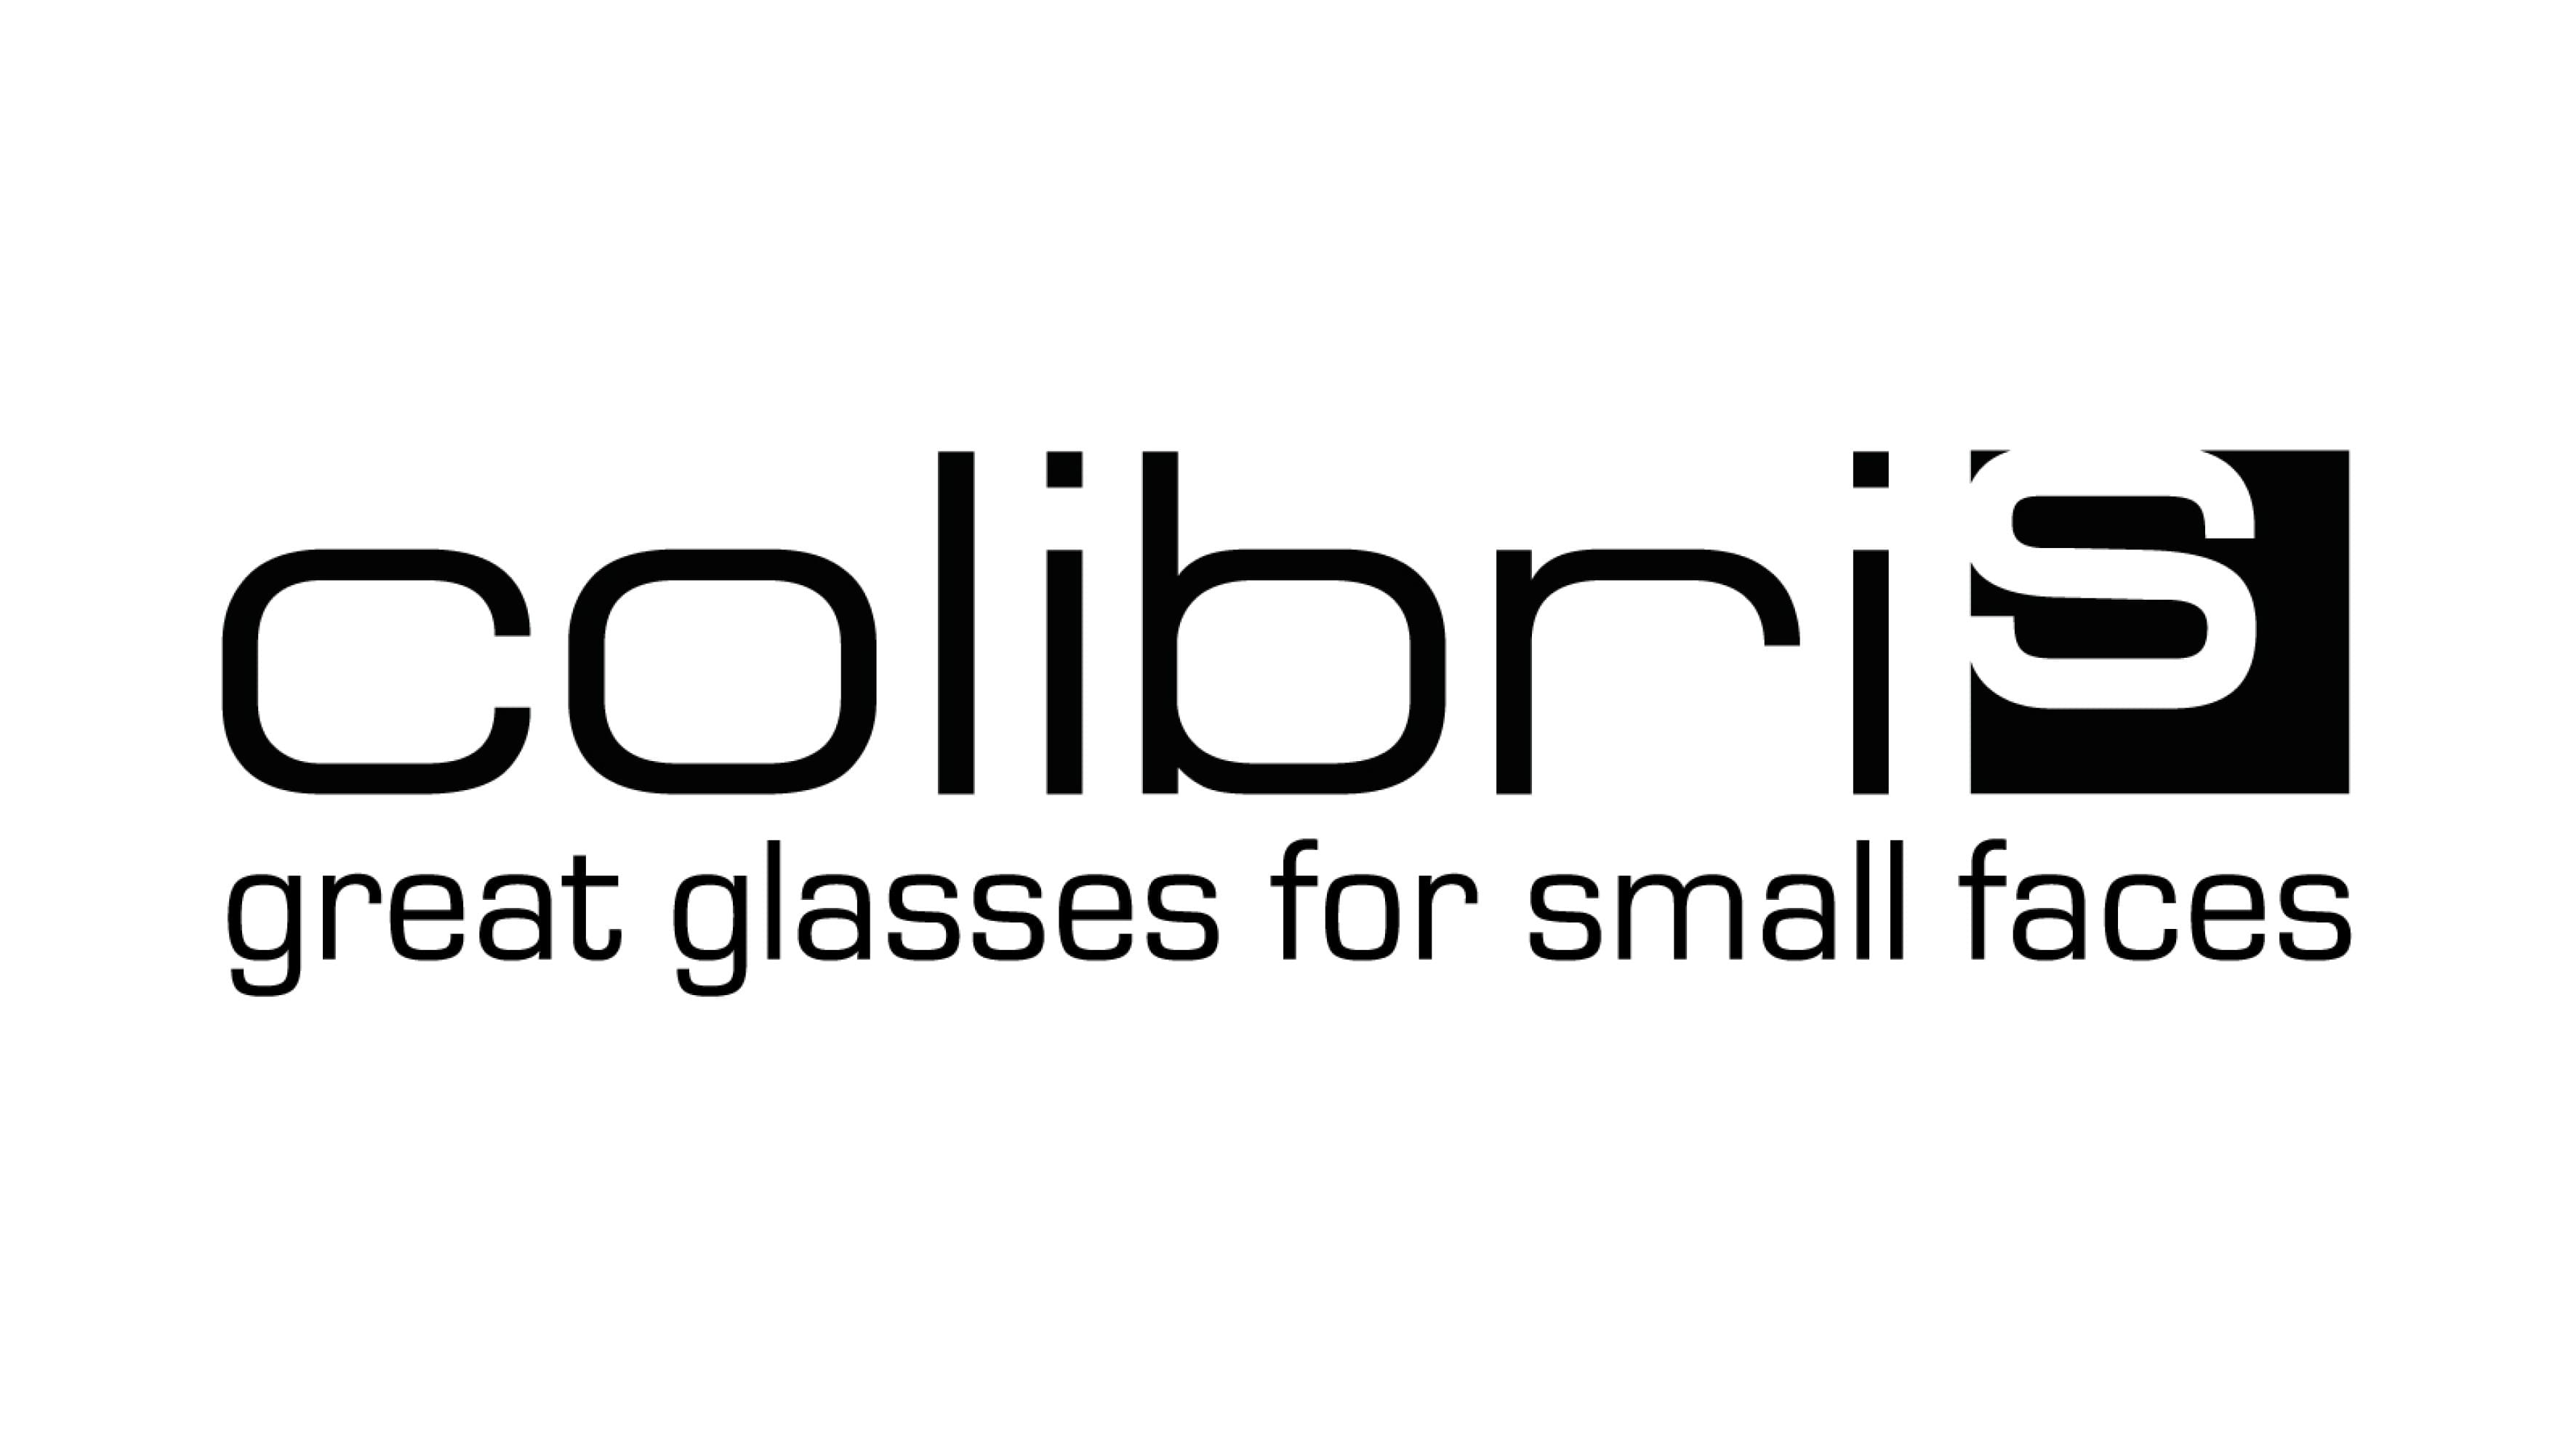 Colibris Brillen bei Optiker Gronde, Augsburg. Logo